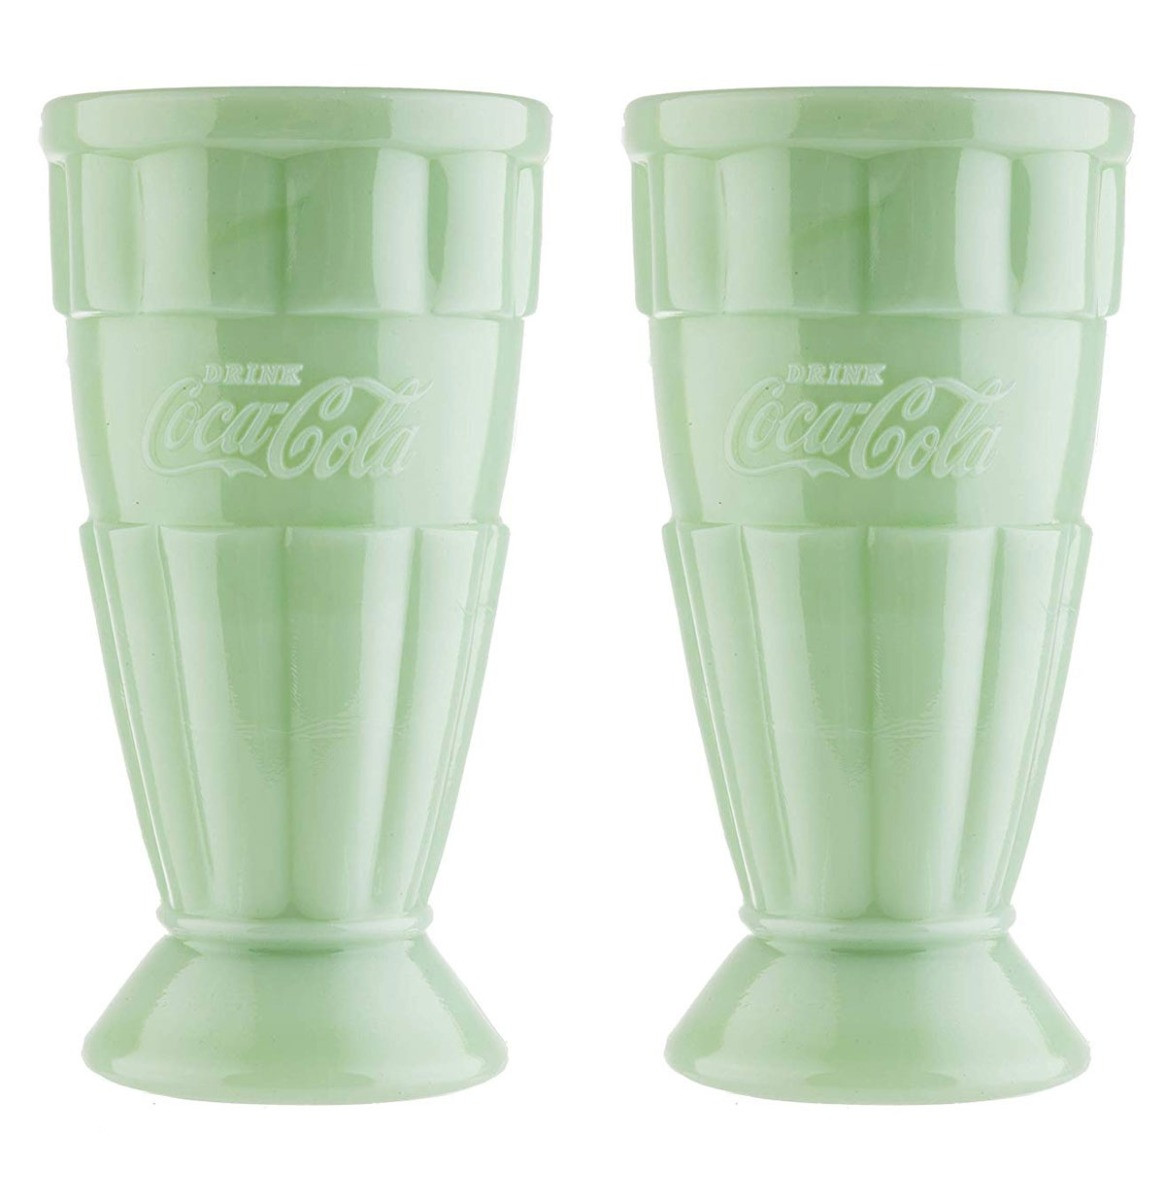 Coca-Cola jadeiet Glazen Malt / Milkshake Beker 0,5 Liter, Set van 2, Groen